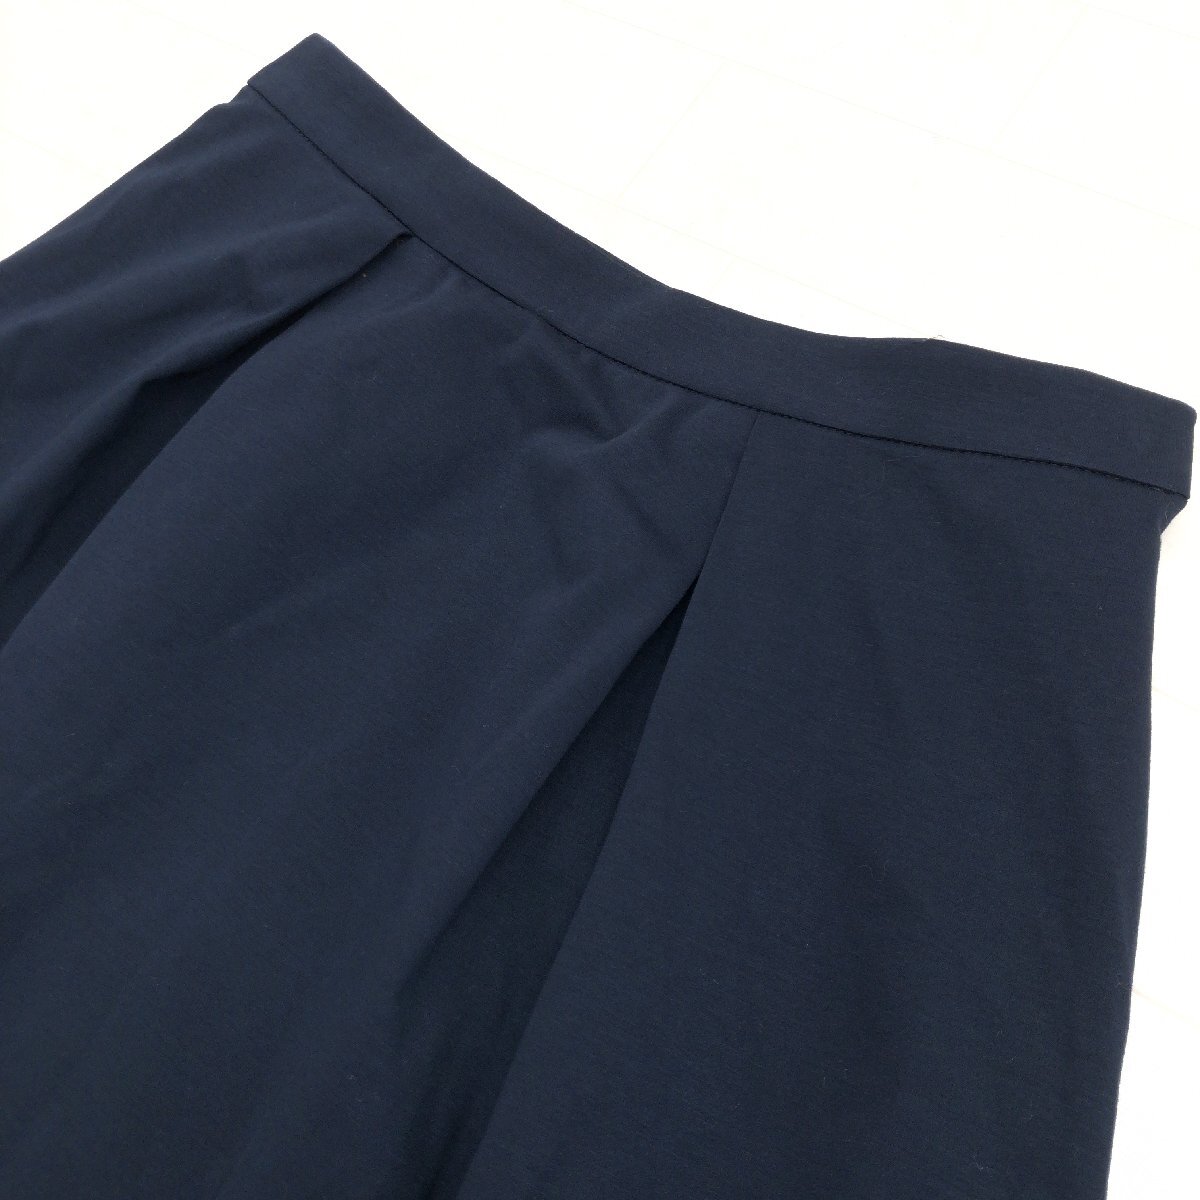 新品 KUMIKYOKU クミキョク コットン フレアスカート 2(M) w66 濃紺 ネイビー ミディ丈 国内正規品 レディース 女性用 組曲 未使用の画像4